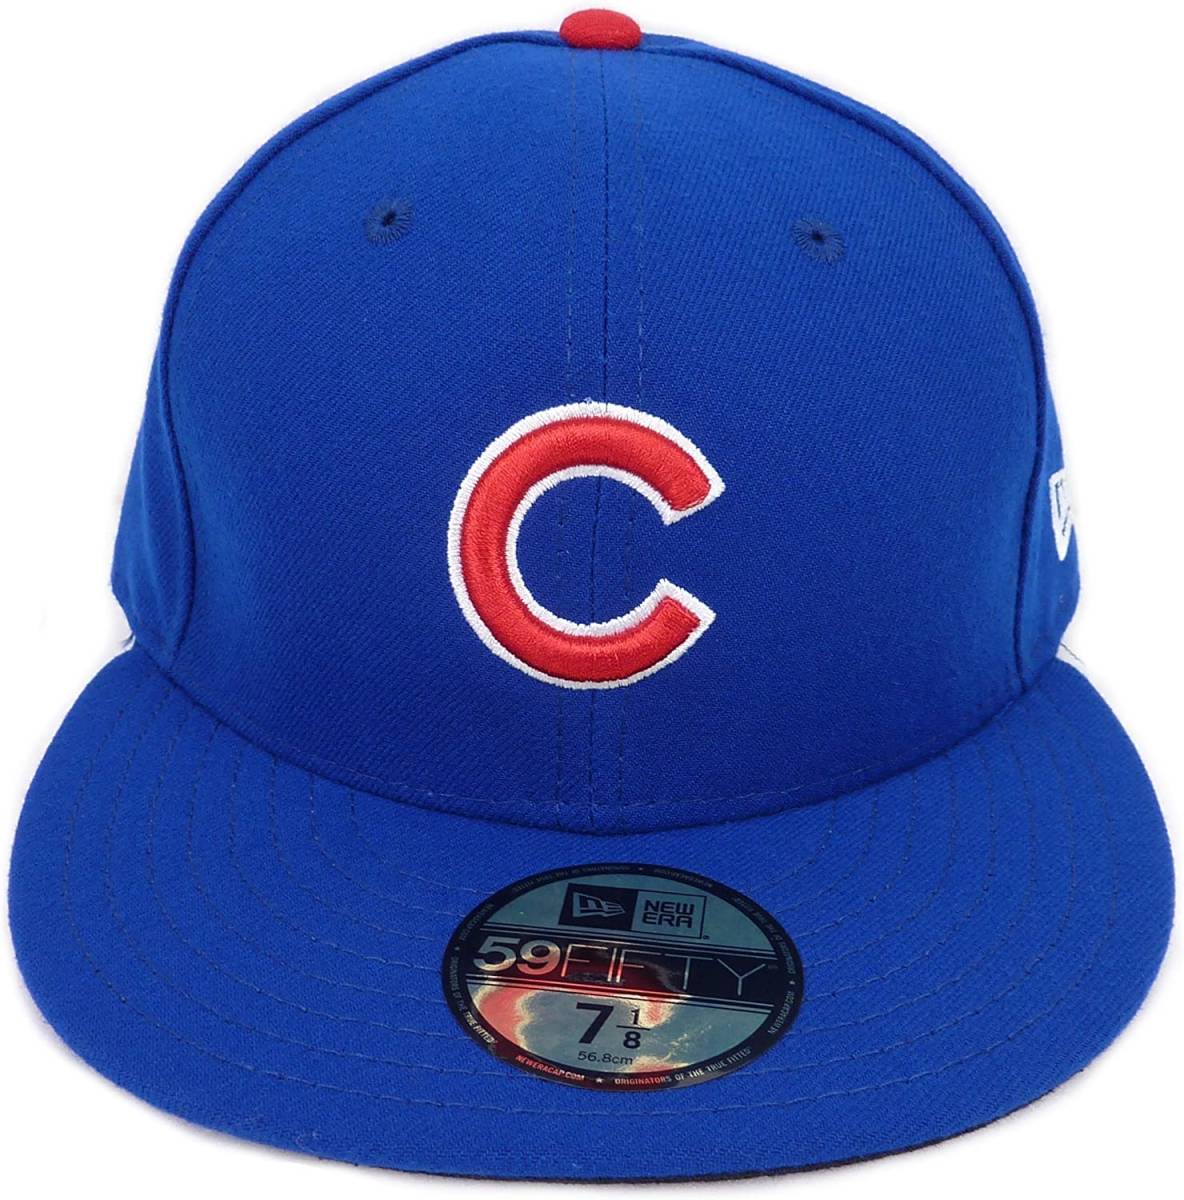 New Era ニューエラ 59FIFTY MLB Chicago Cubs シカゴ カブス ベースボールキャップ (7 3/8 58.7cm)【並行輸入品】